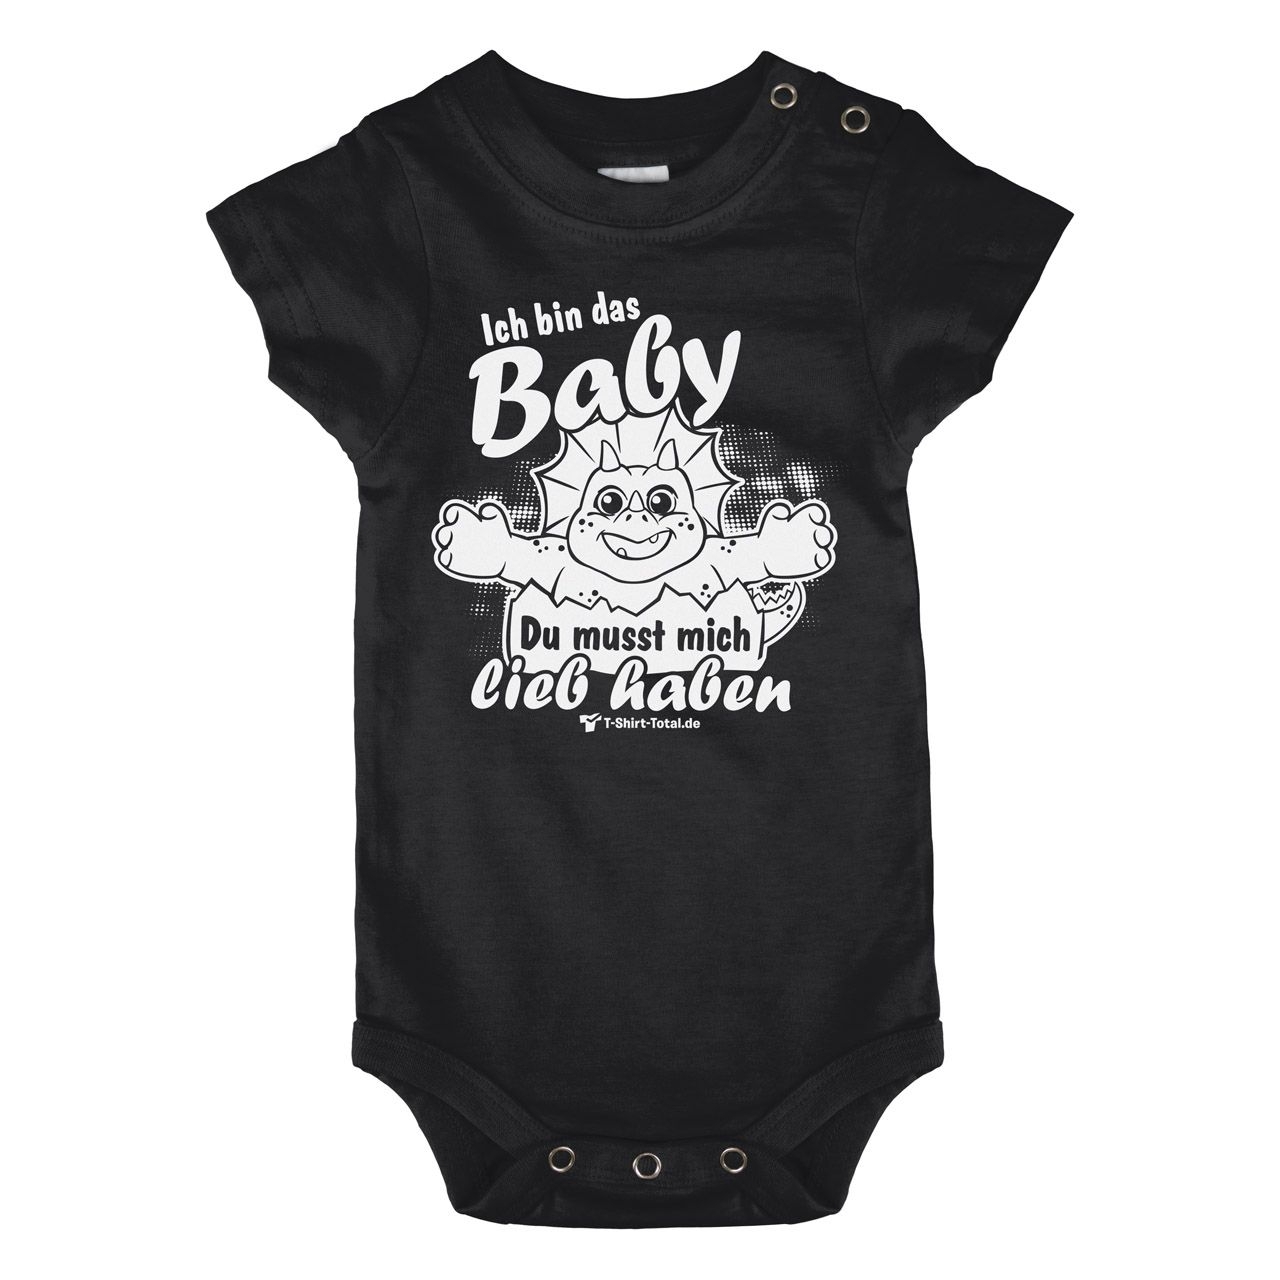 Bin das Baby Baby Body Kurzarm schwarz 68 / 74